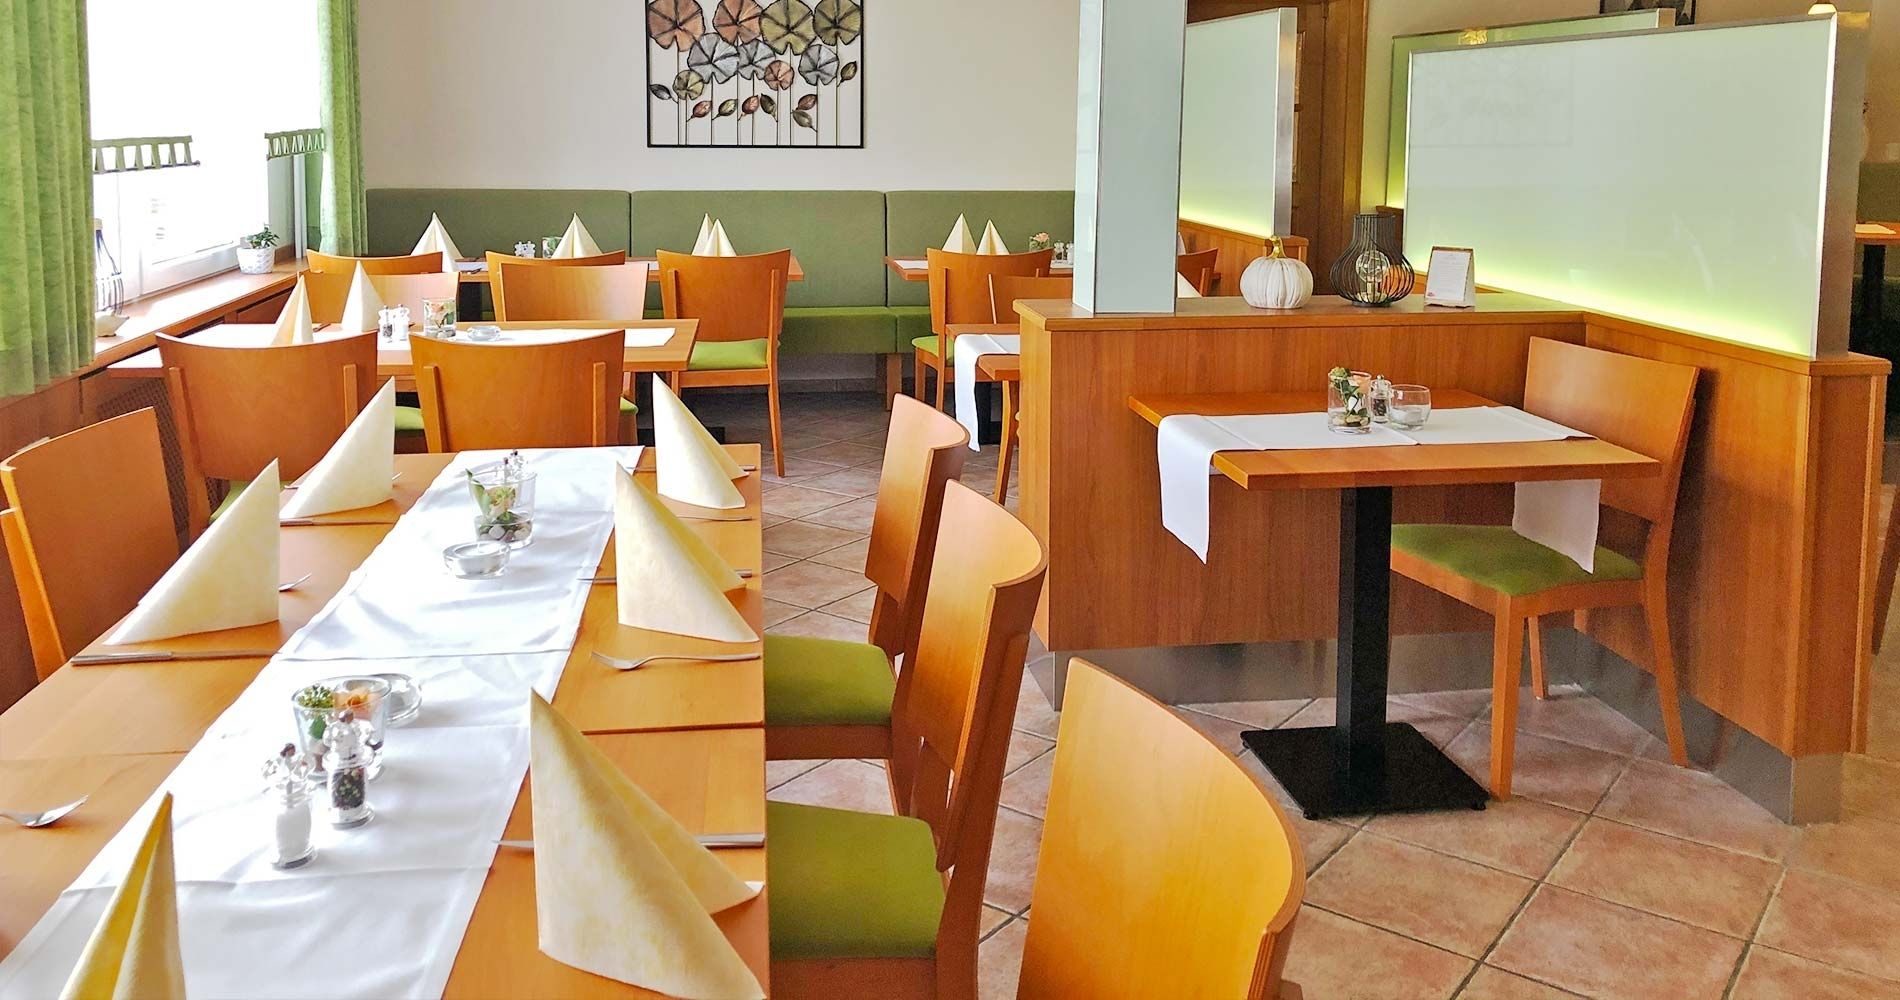 Speisegaststätte Orth - Restaurant Lenderscheid - Tischreservierung / Veranstaltung